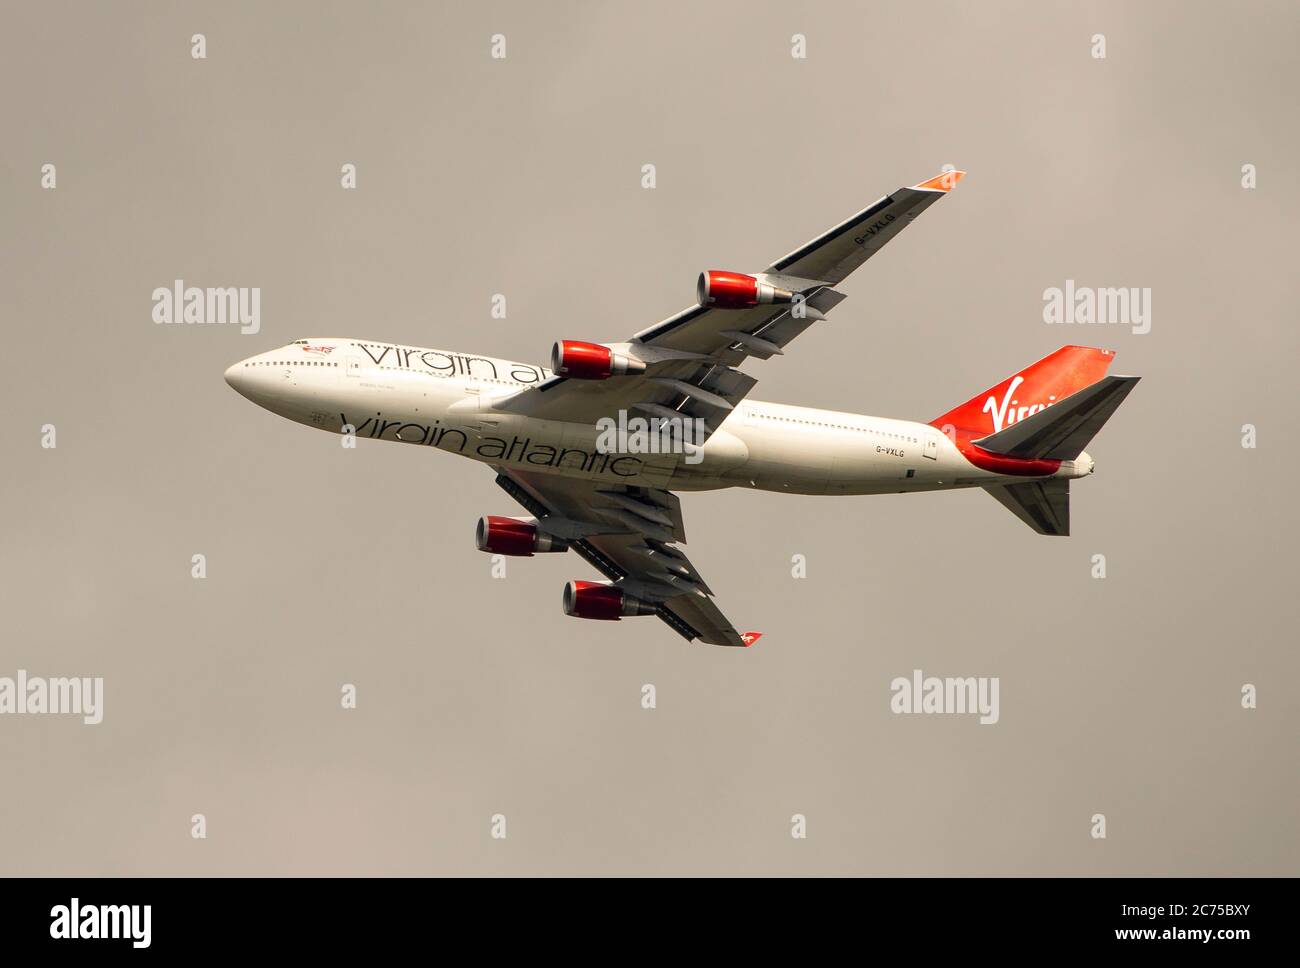 Un Boeing 747-400 Virgin Atlantic décollage de l'aéroport de Manchester, Angleterre, Royaume-Uni. Banque D'Images